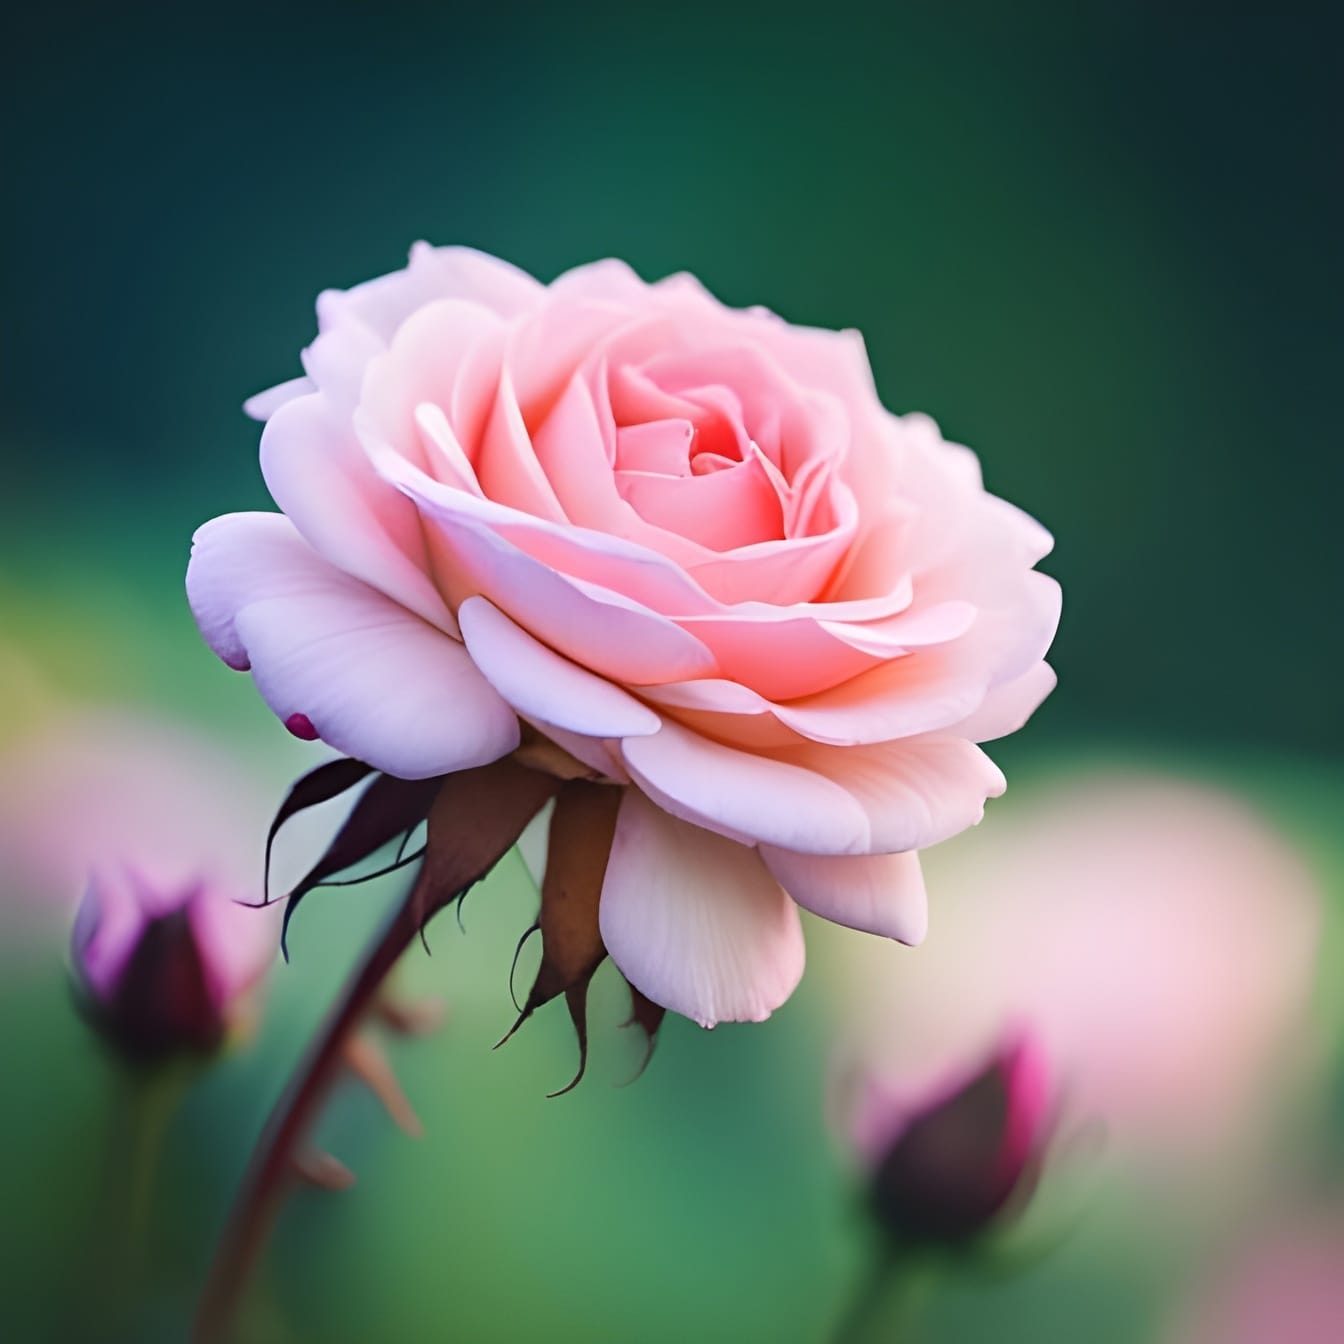 Rosa rosa única com pétalas rosadas brilhantes – arte de inteligência artificial